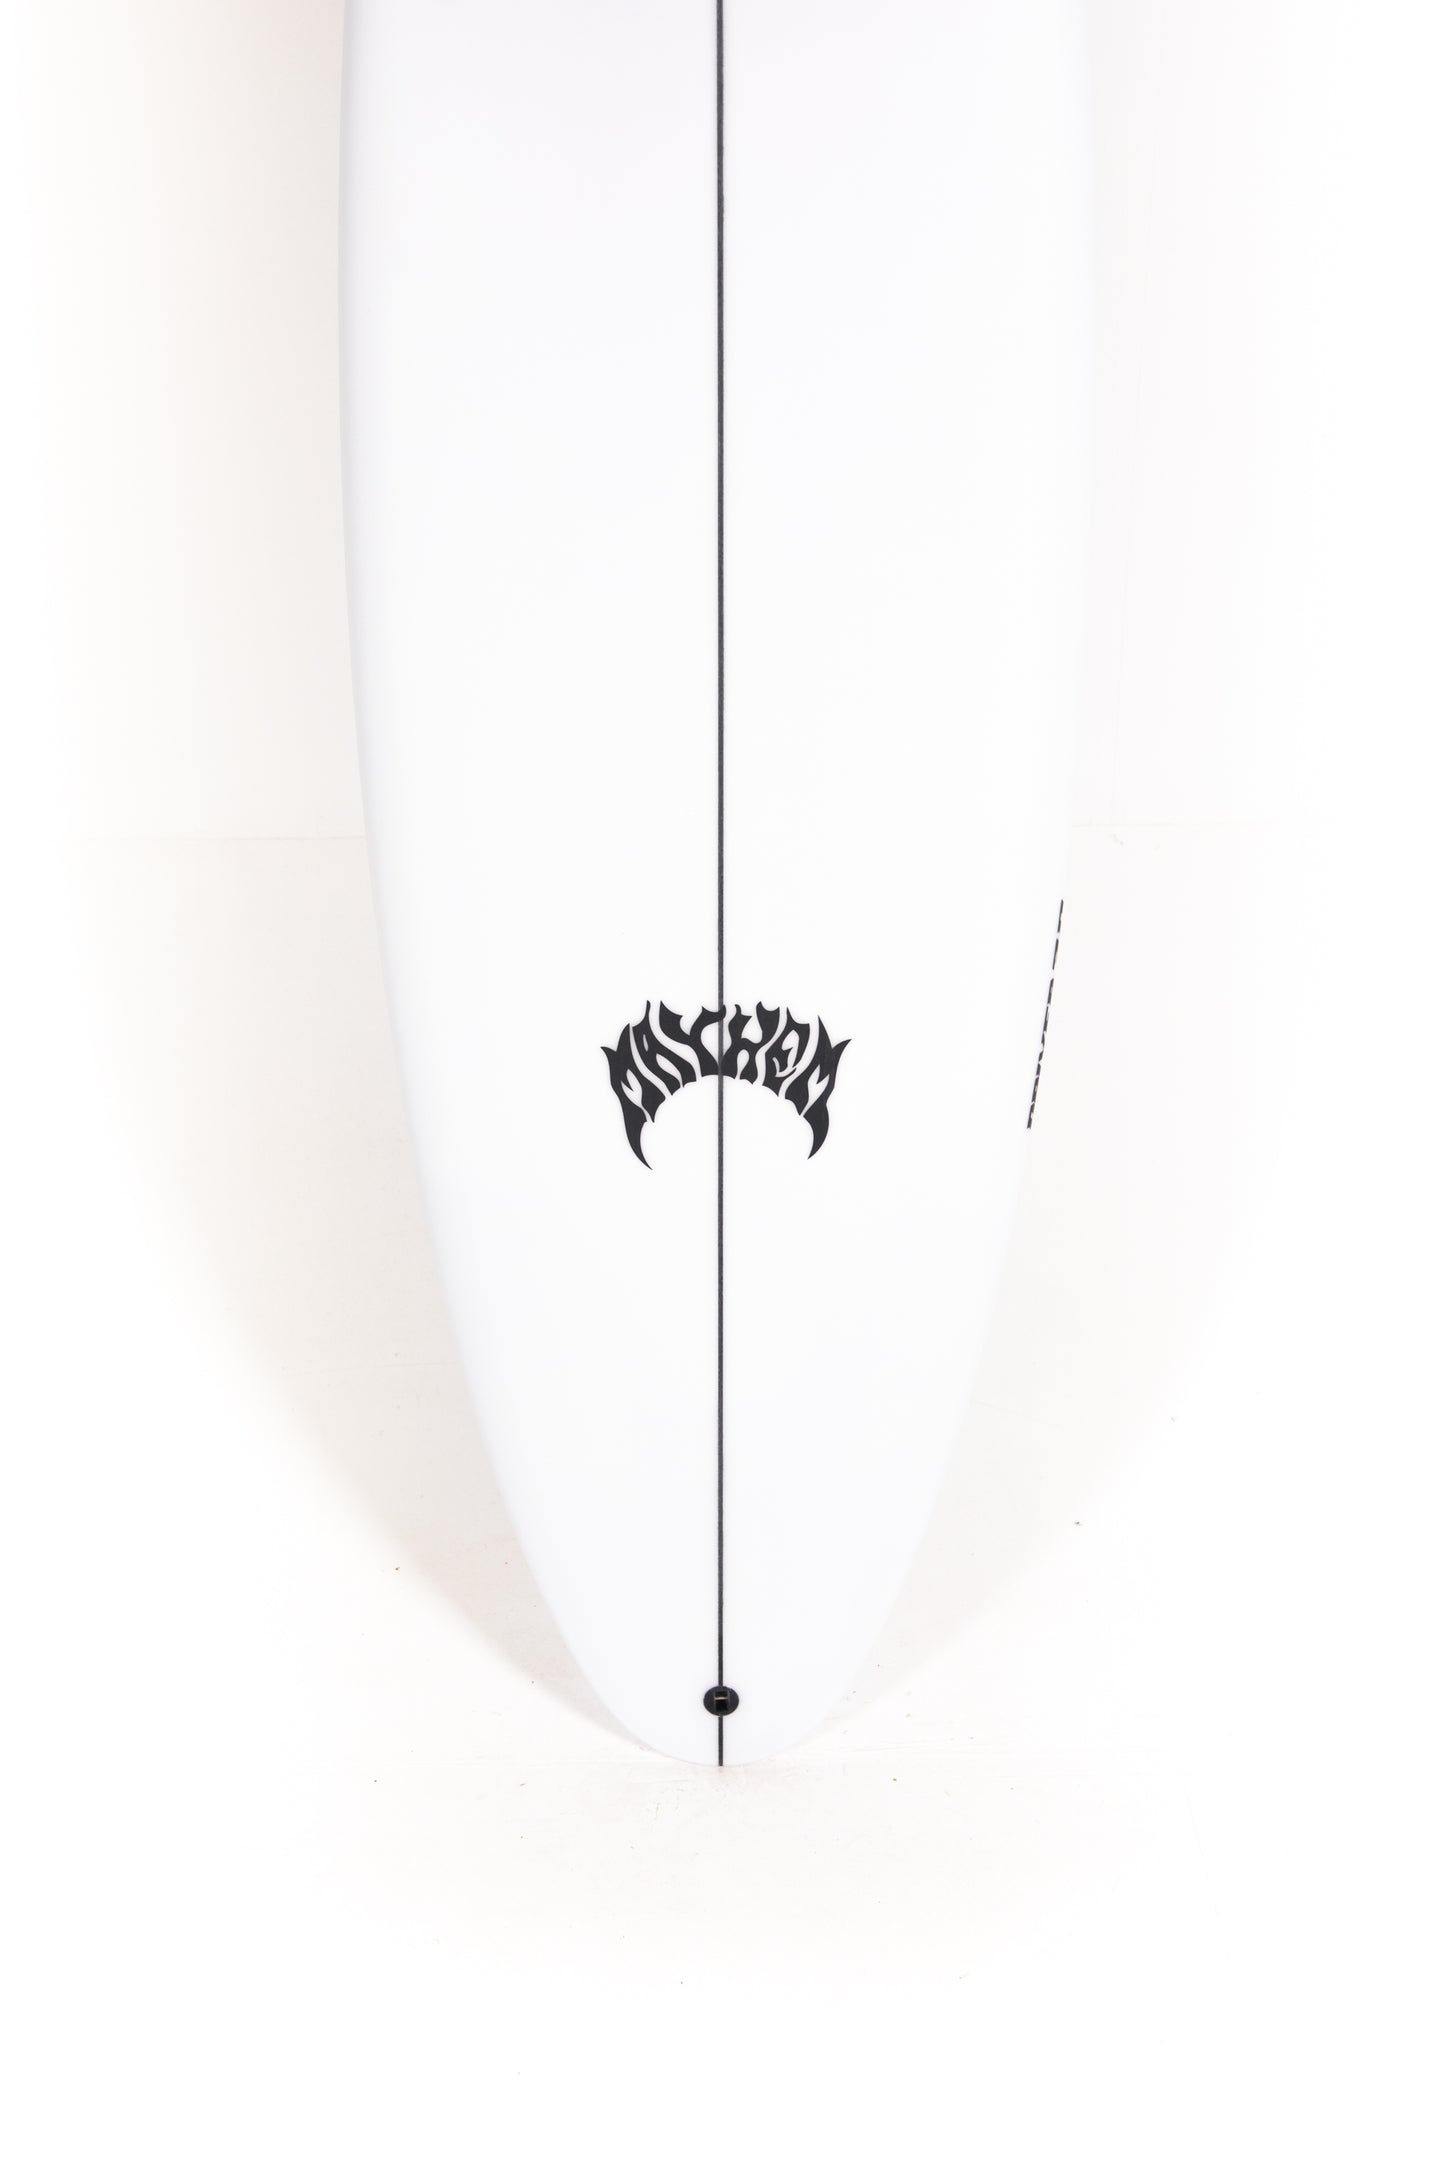 
                  
                    Pukas-Surf-Shop-Lost-Surfboards-driver-3-0-Matt-Biolos-6_2
                  
                